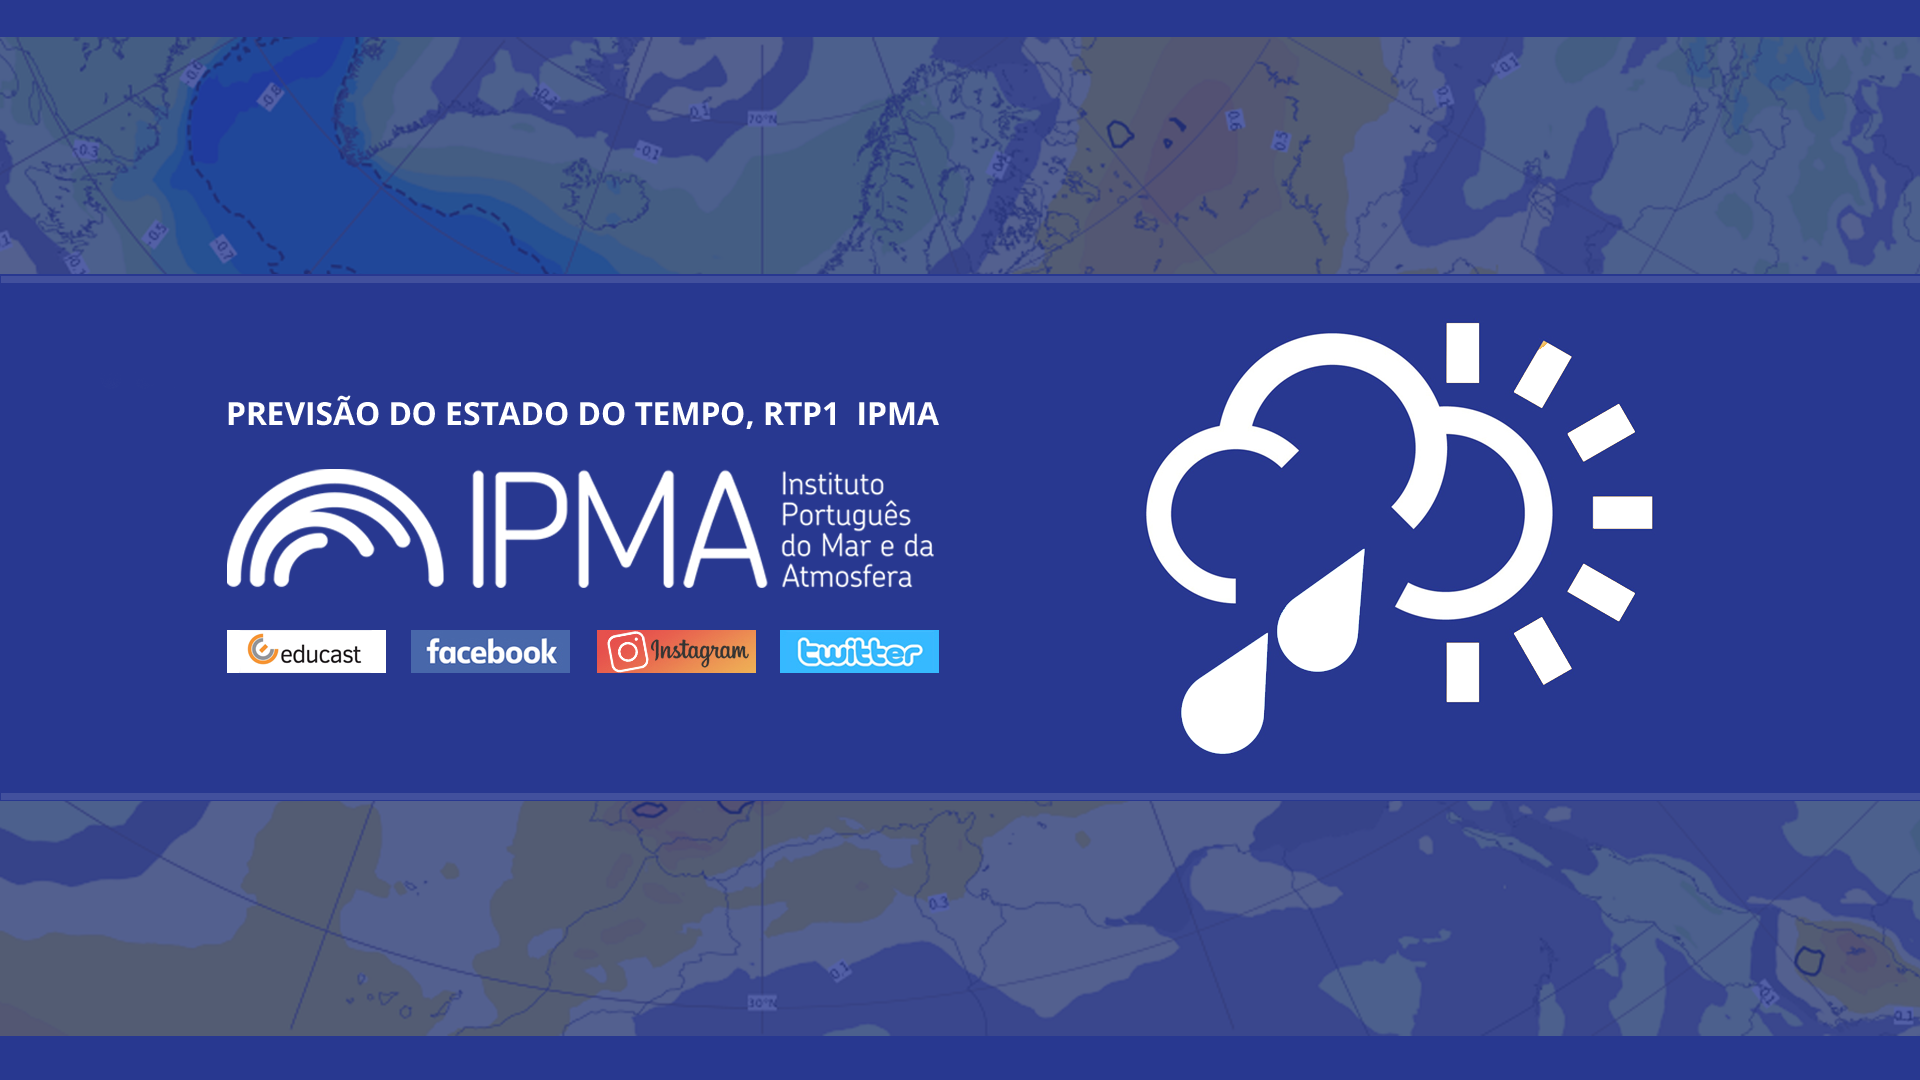  Previsão do estado do tempo, RTP1, 05-09-2022, IPMA.